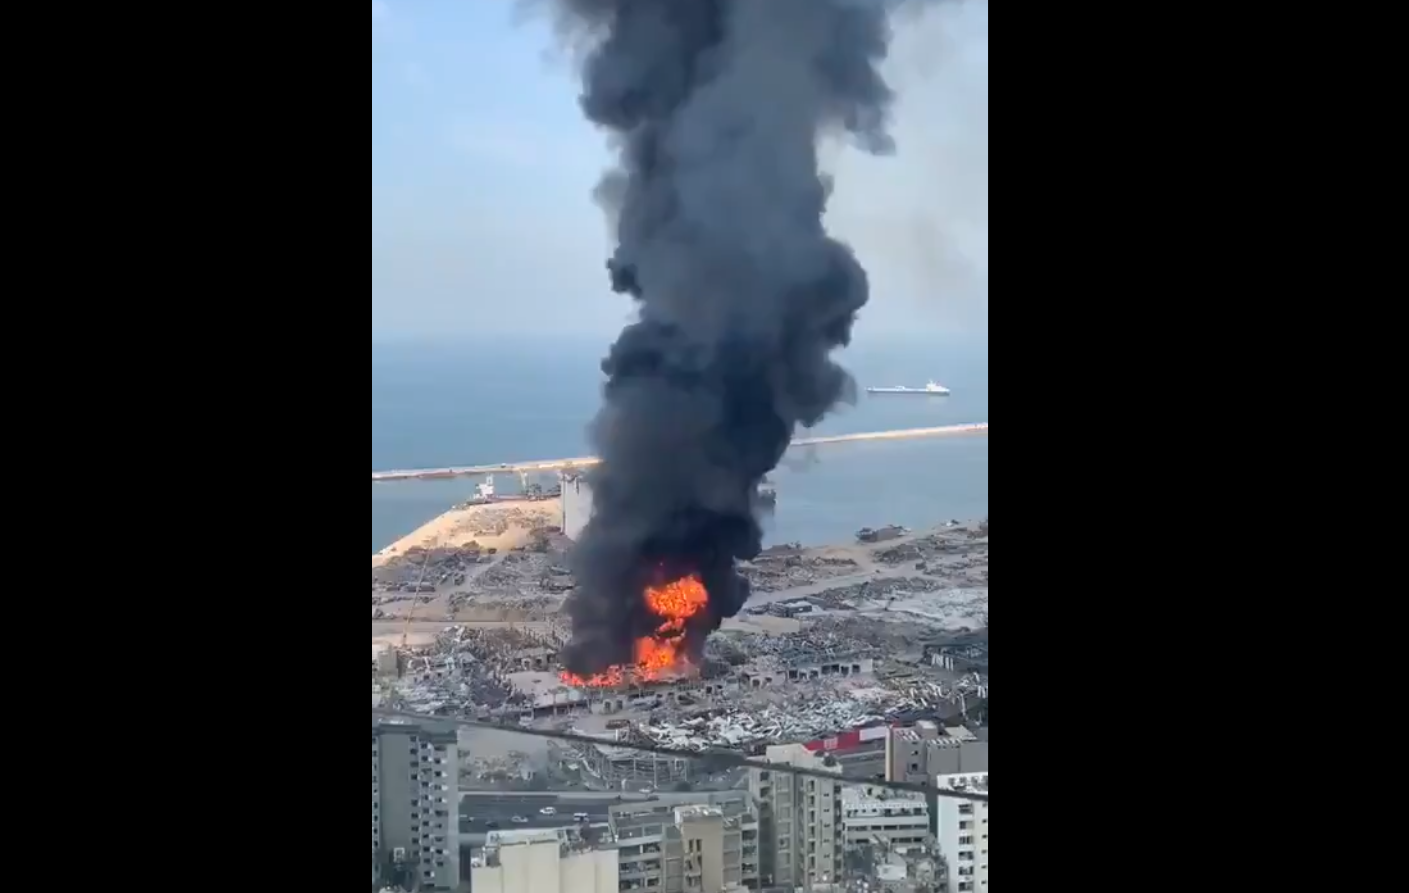 В Бейруте вспыхнул сильный пожар в порту, который разрушил взрыв селитры: видео очевидцев